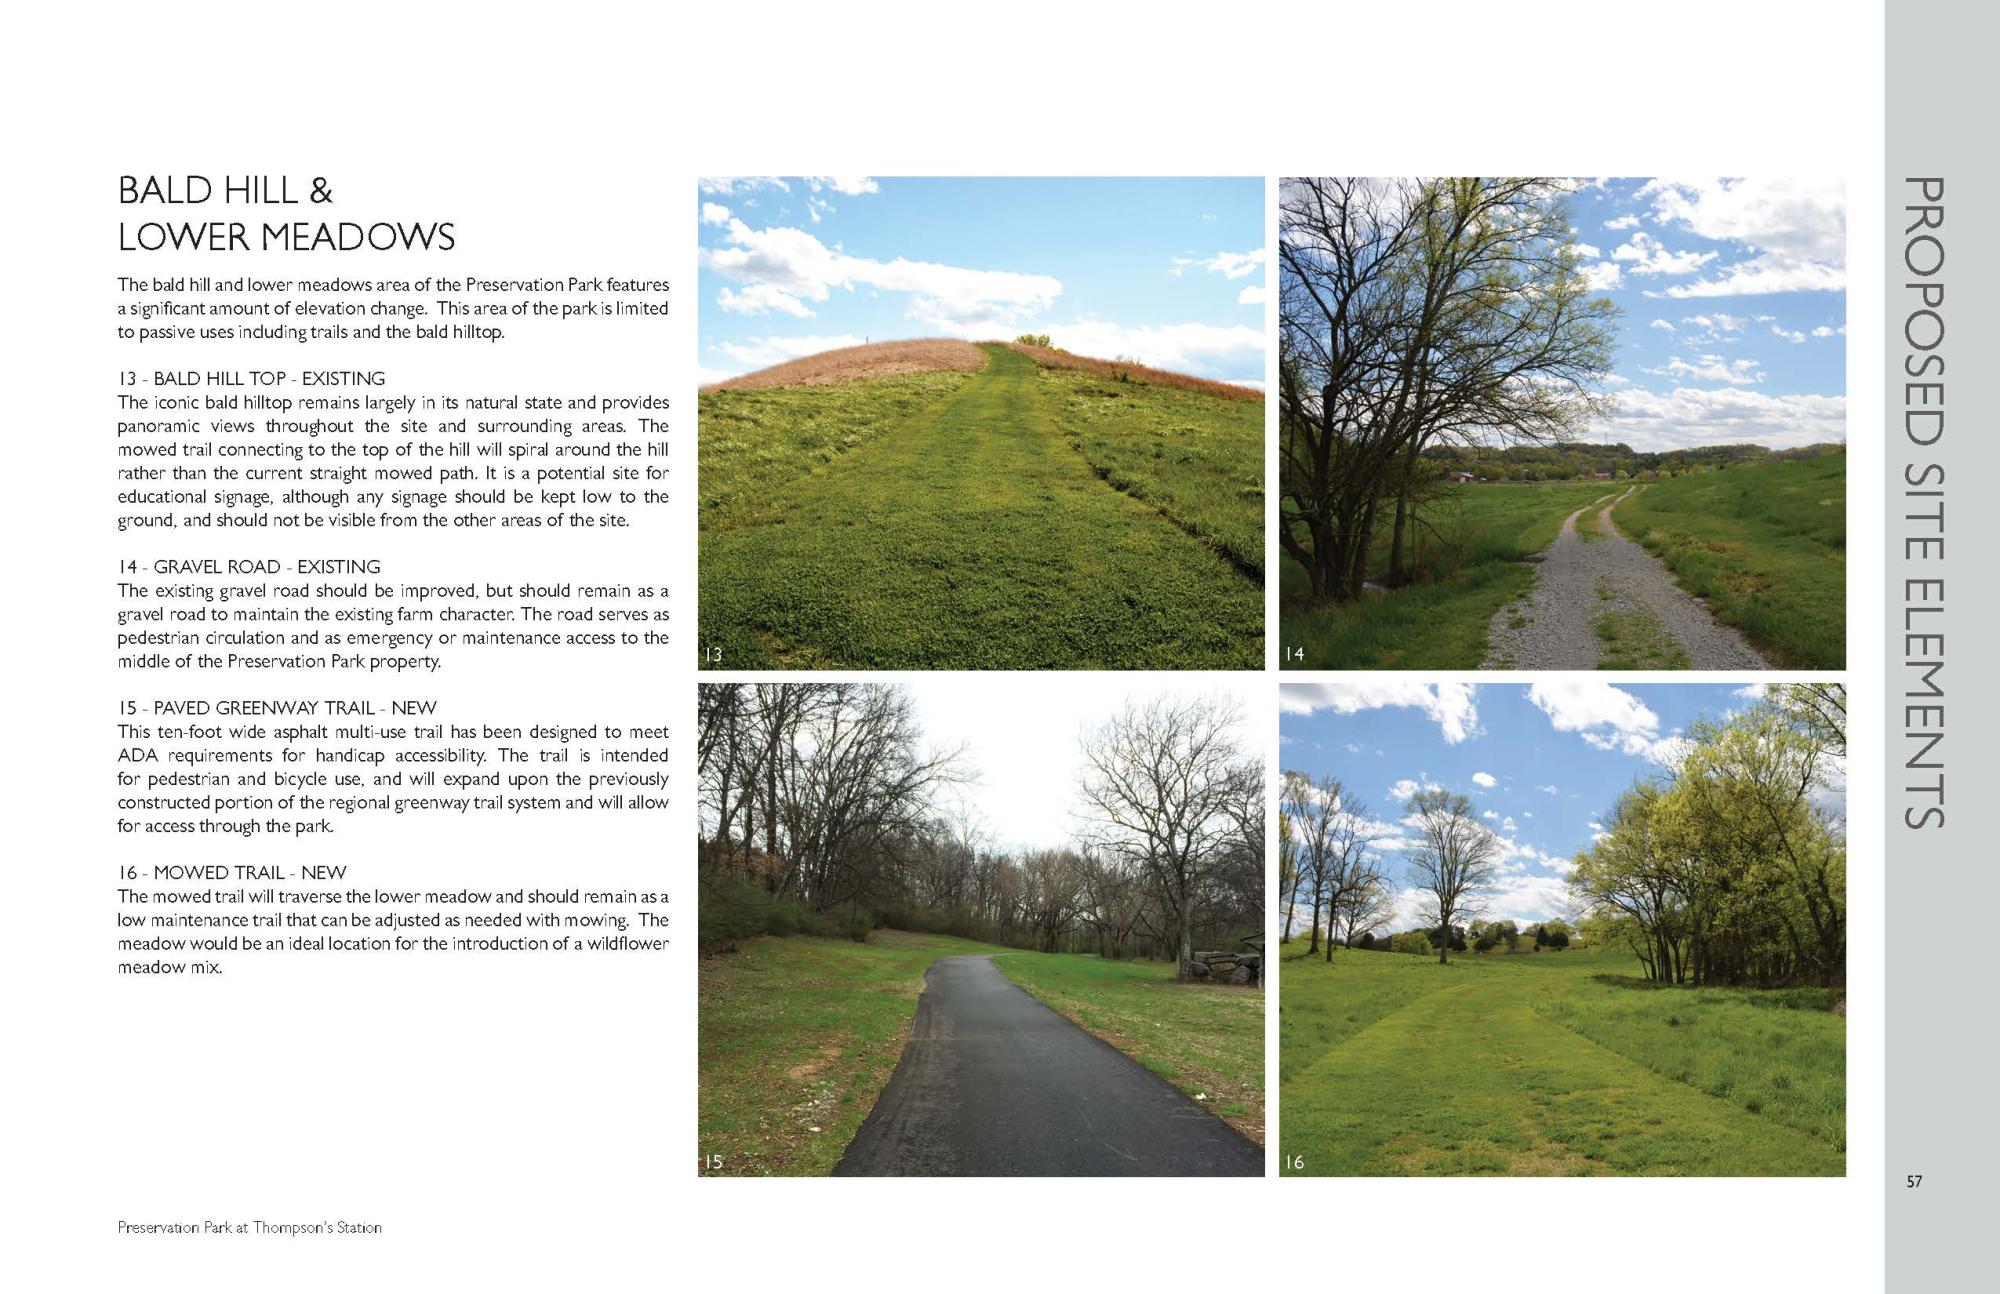 Preservation park master plan_Page_57